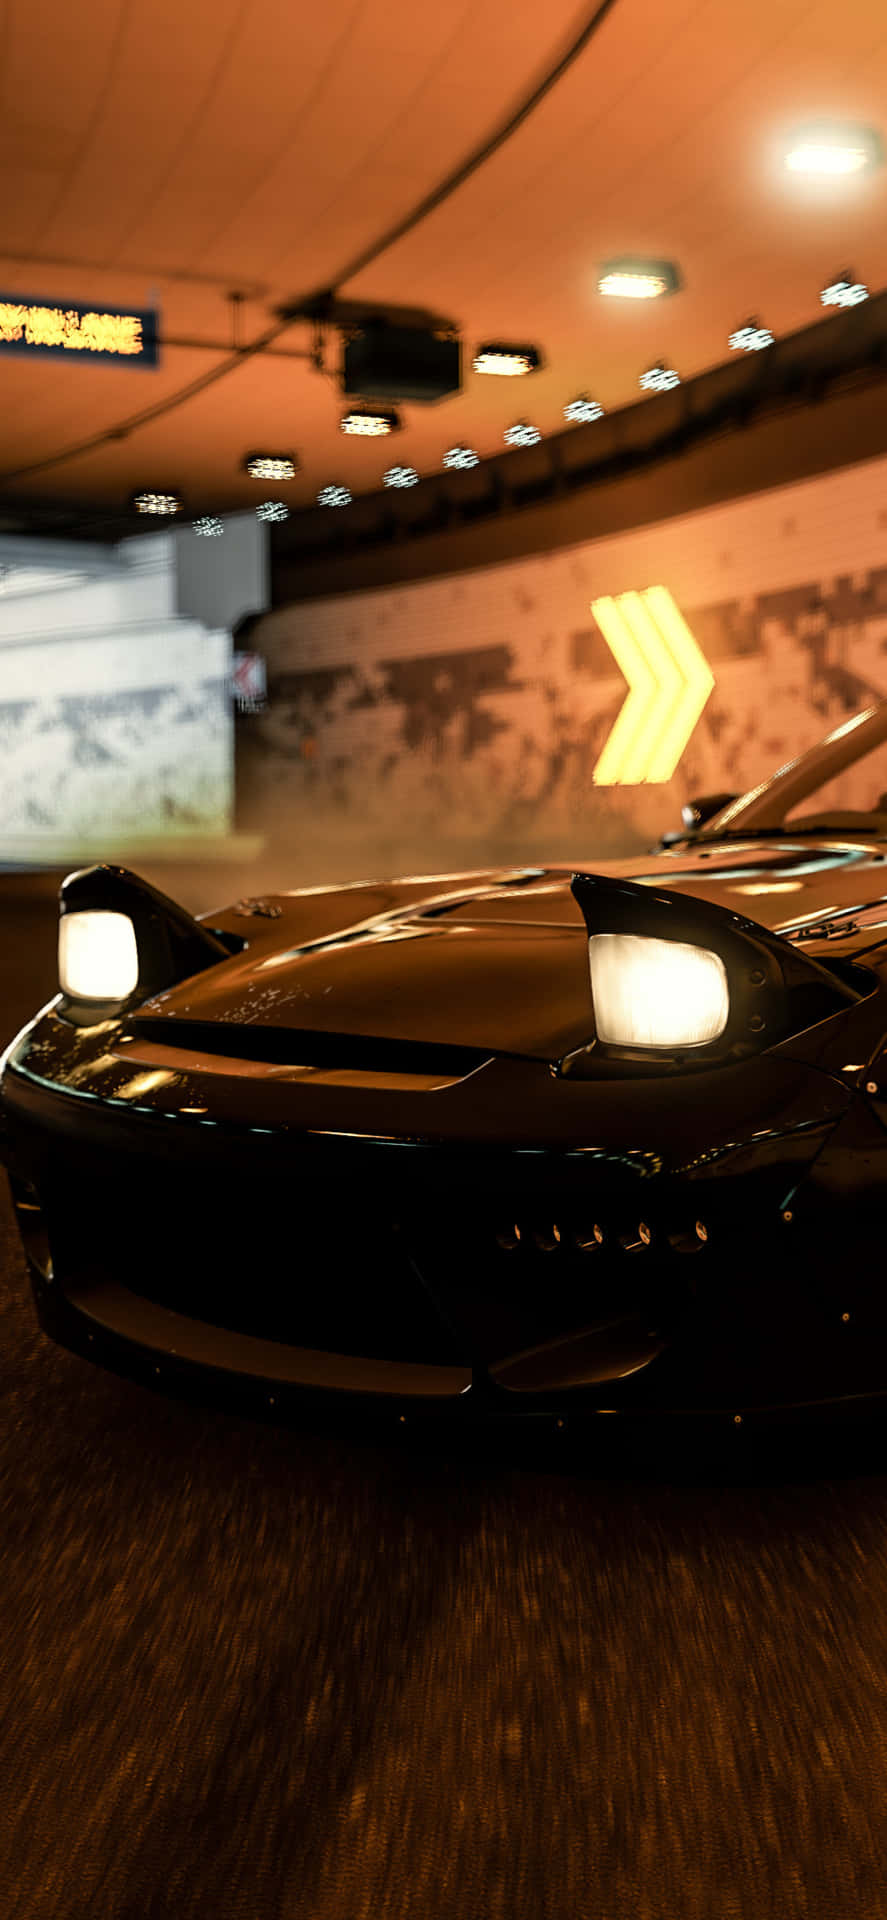 Schwarzermercedes Iphone X Hintergrund Für Forza Motorsport 7